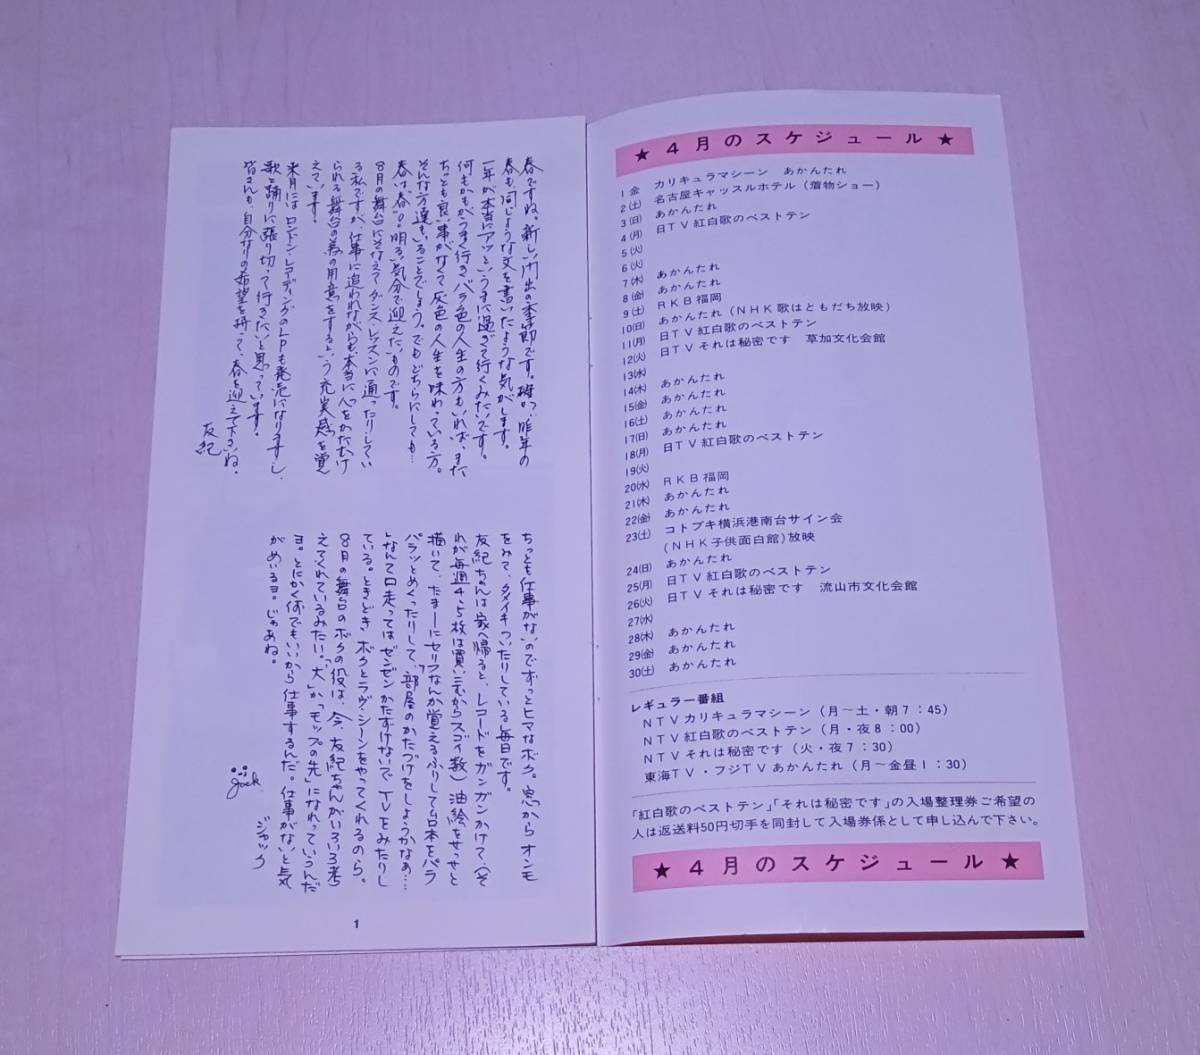  брошюра .. Club бюллетень фэн-клуба NO.73 1977 год Okazaki Yuki идол ... соус материалы бумага предмет бумага моно редкость Showa Retro подлинная вещь so25 ta